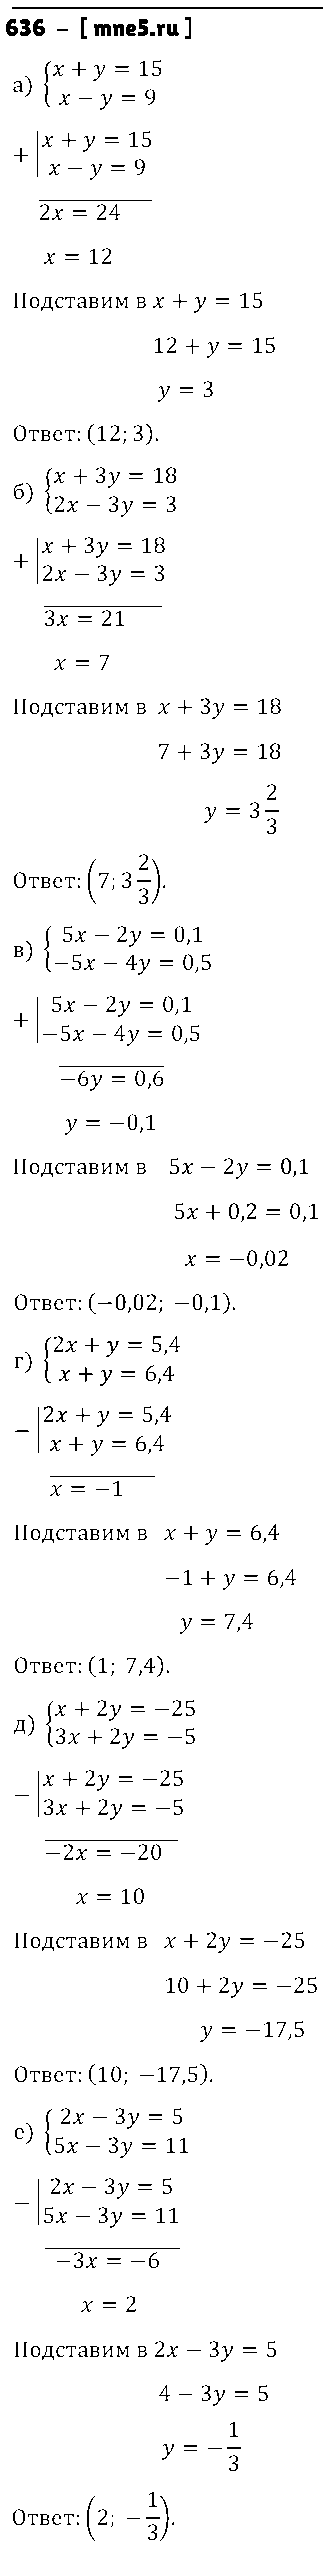 ГДЗ Алгебра 8 класс - 636